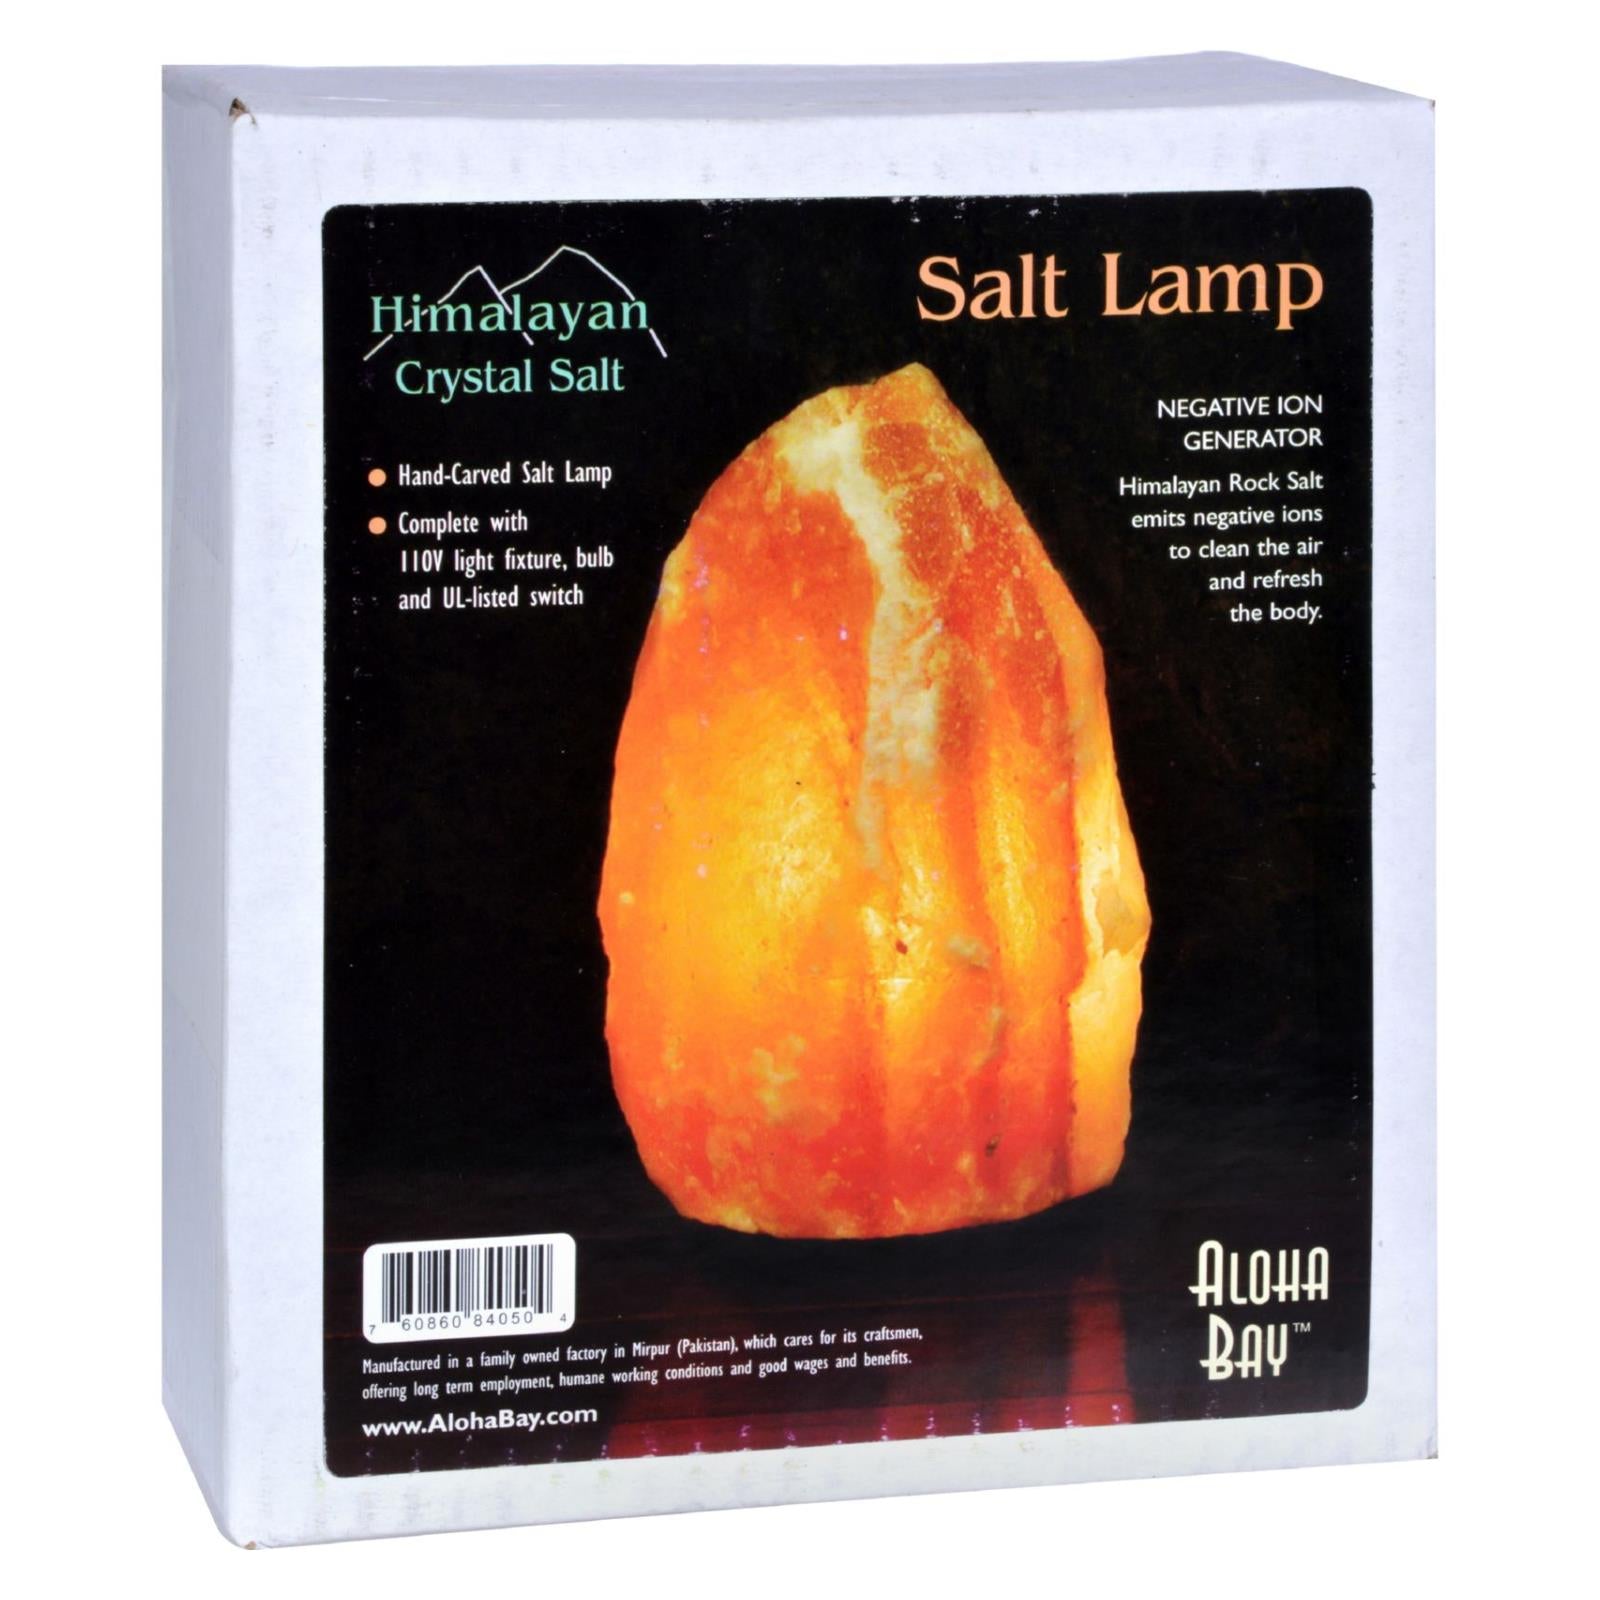 Himalayan Crystal Salt Lamp - 1 Lamp